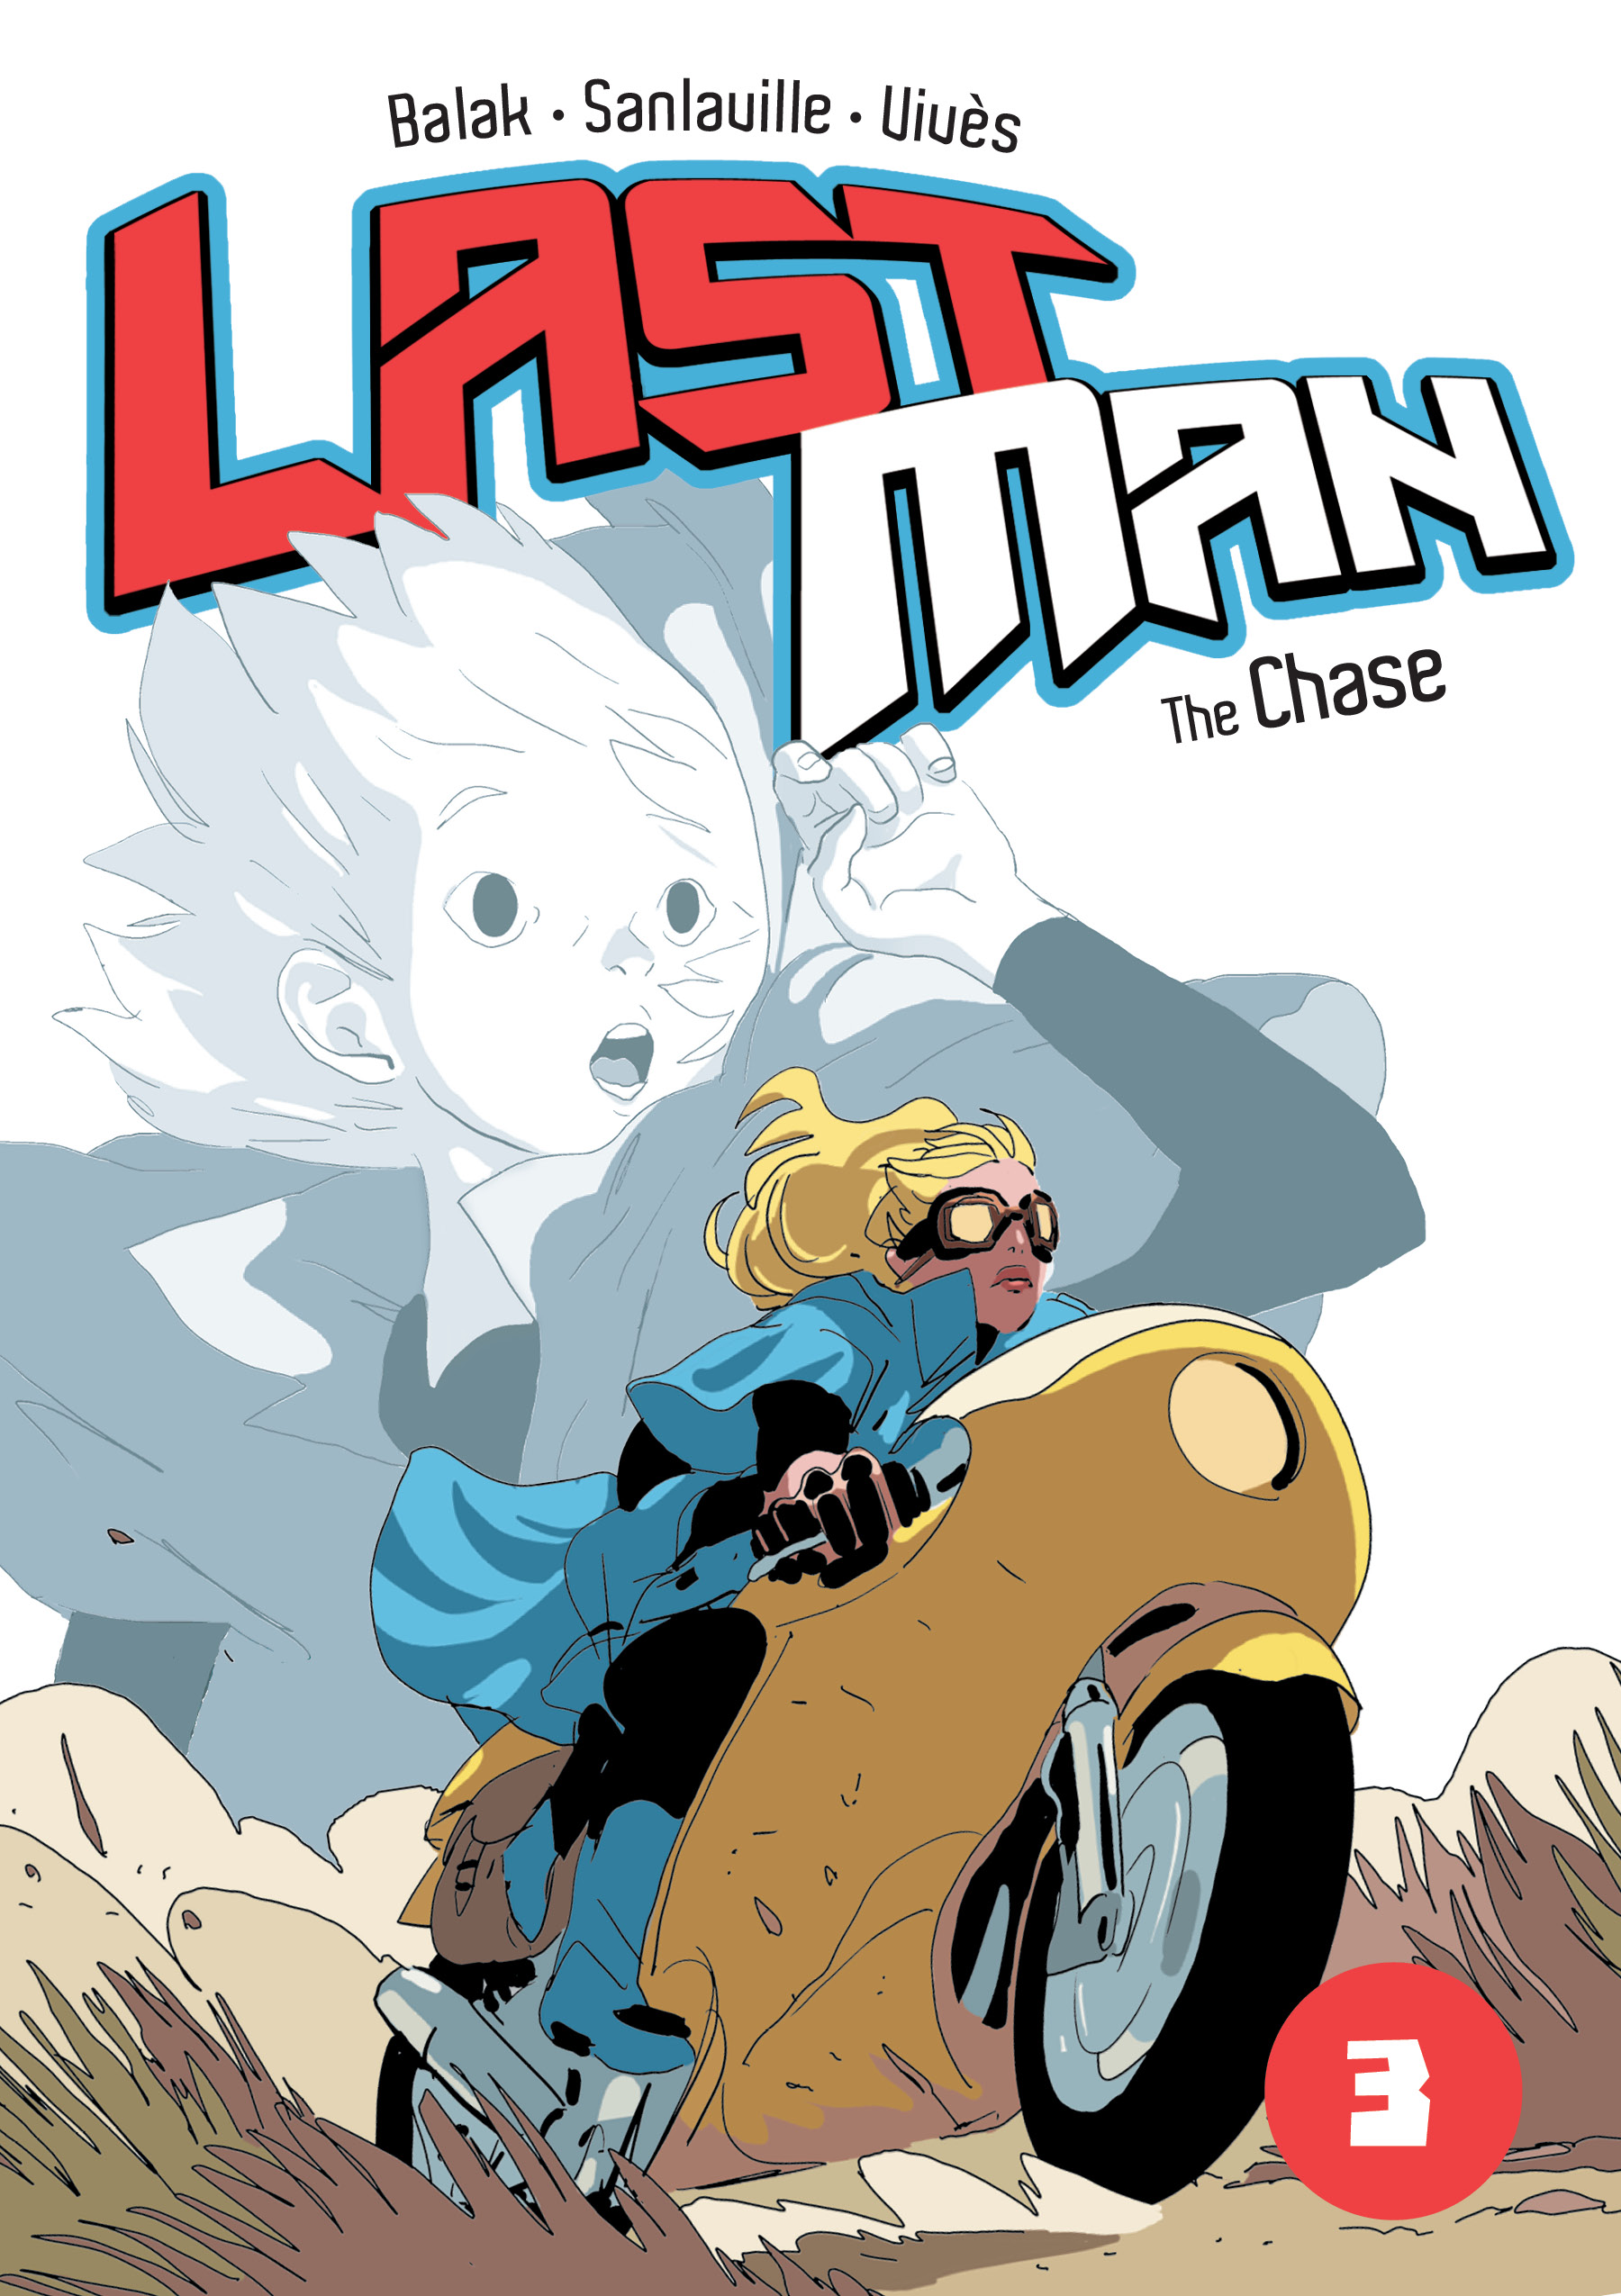 Last Man Vol. 3: The Chase by Bastien Vivès, Michaël Sanlaville & Balak -  Paste